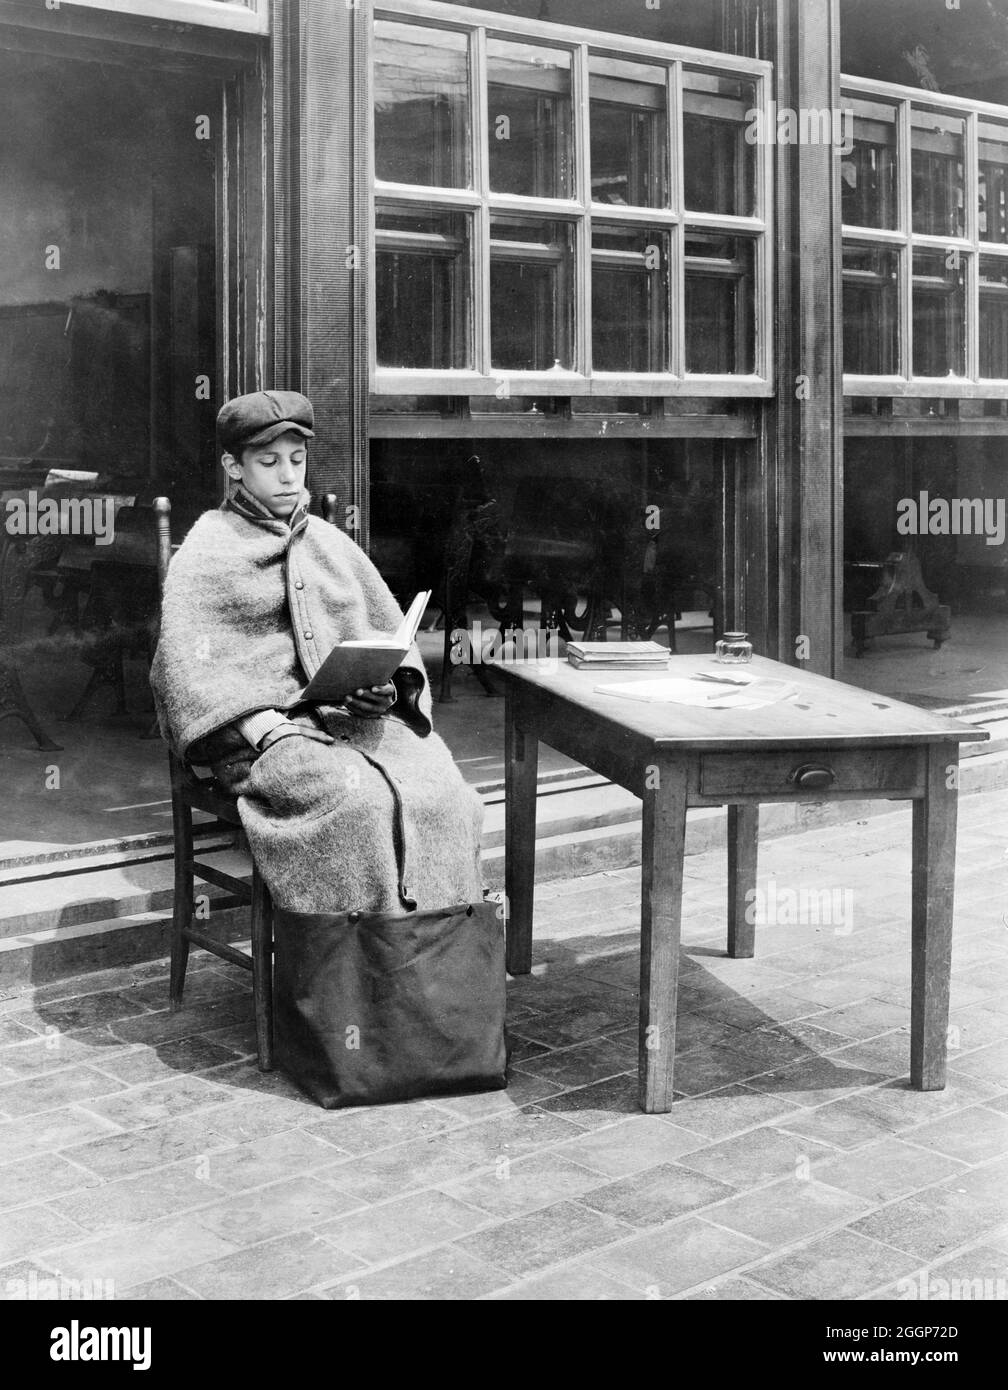 Un garçon portant un sac de détente de marque Huyck (un manteau avec un sac attaché au fond) pour rester au chaud dans une école en plein air à New York, 1918, au moment de la grippe espagnole pandemicirca photographiée par Jessie Tarbox Beals. Banque D'Images